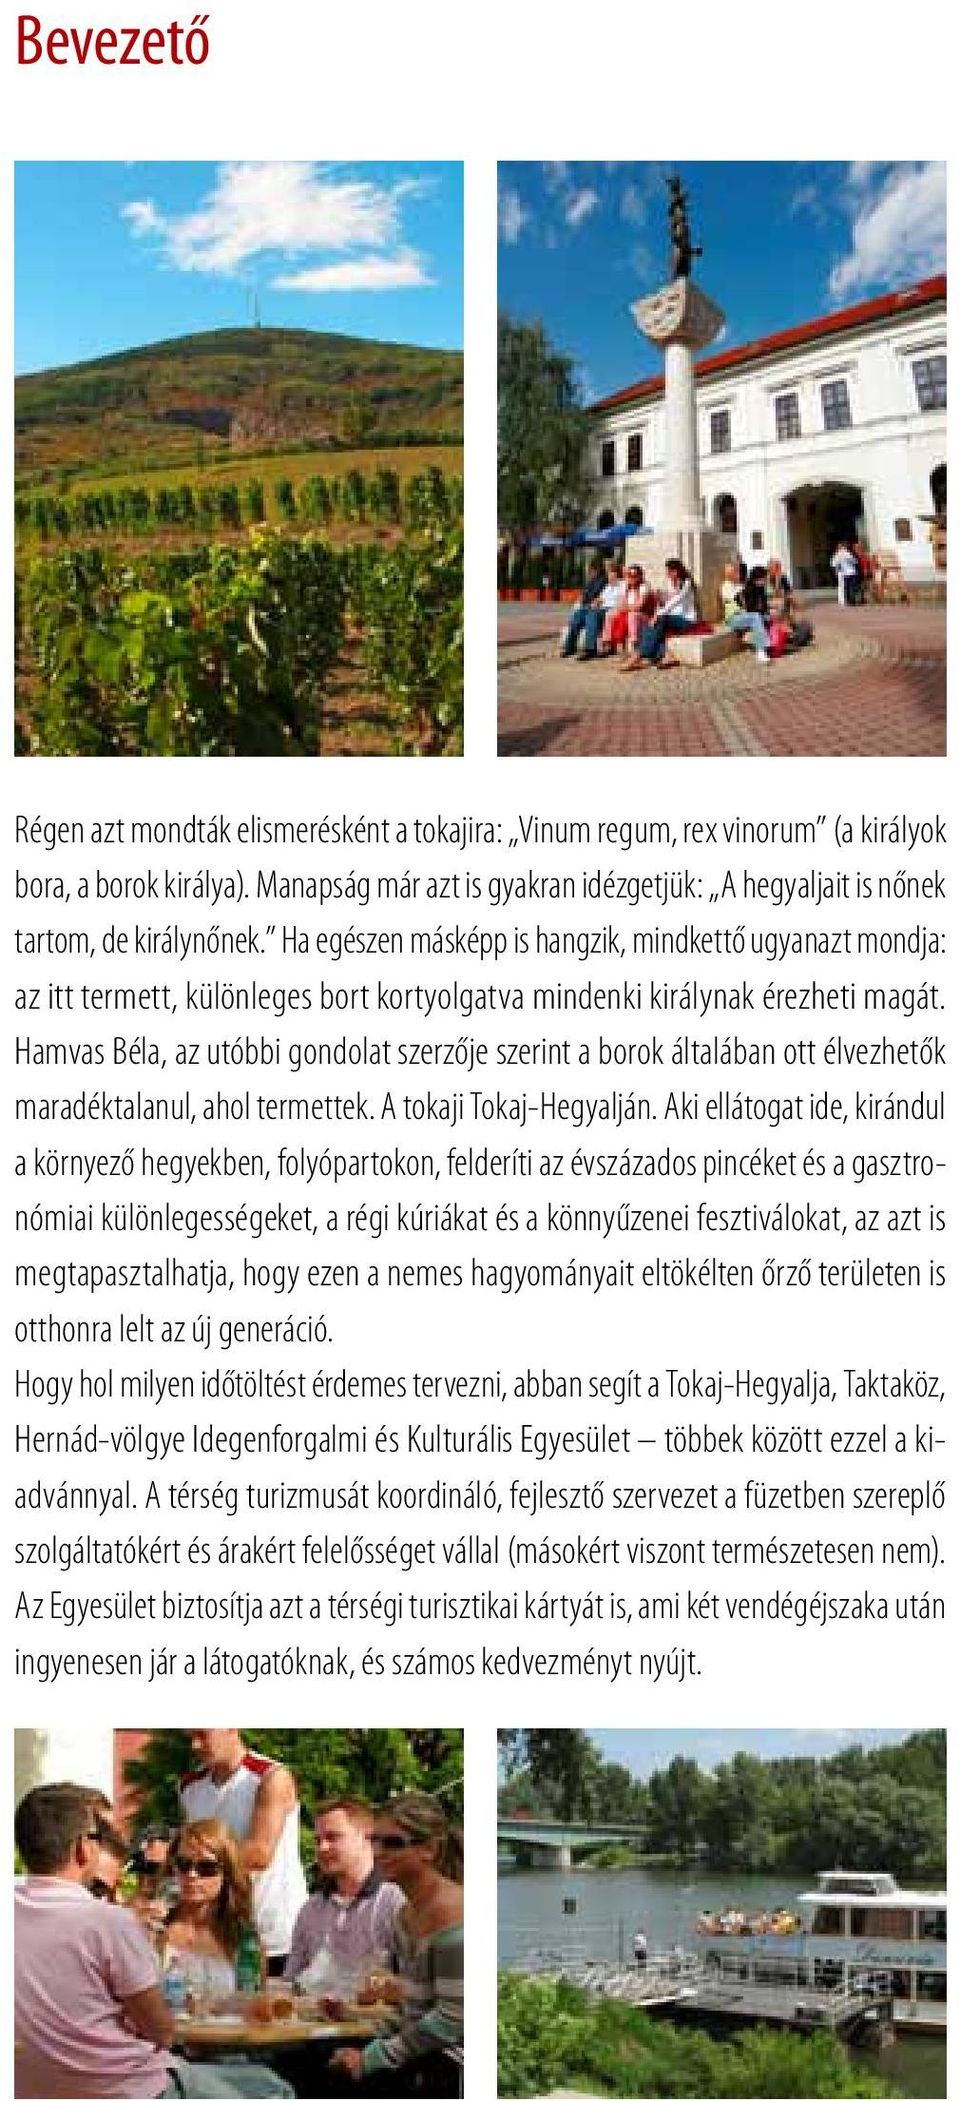 Hamvas Béla, az utóbbi gondolat szerzője szerint a borok általában ott élvezhetők maradéktalanul, ahol termettek. A tokaji Tokaj-Hegyalján.